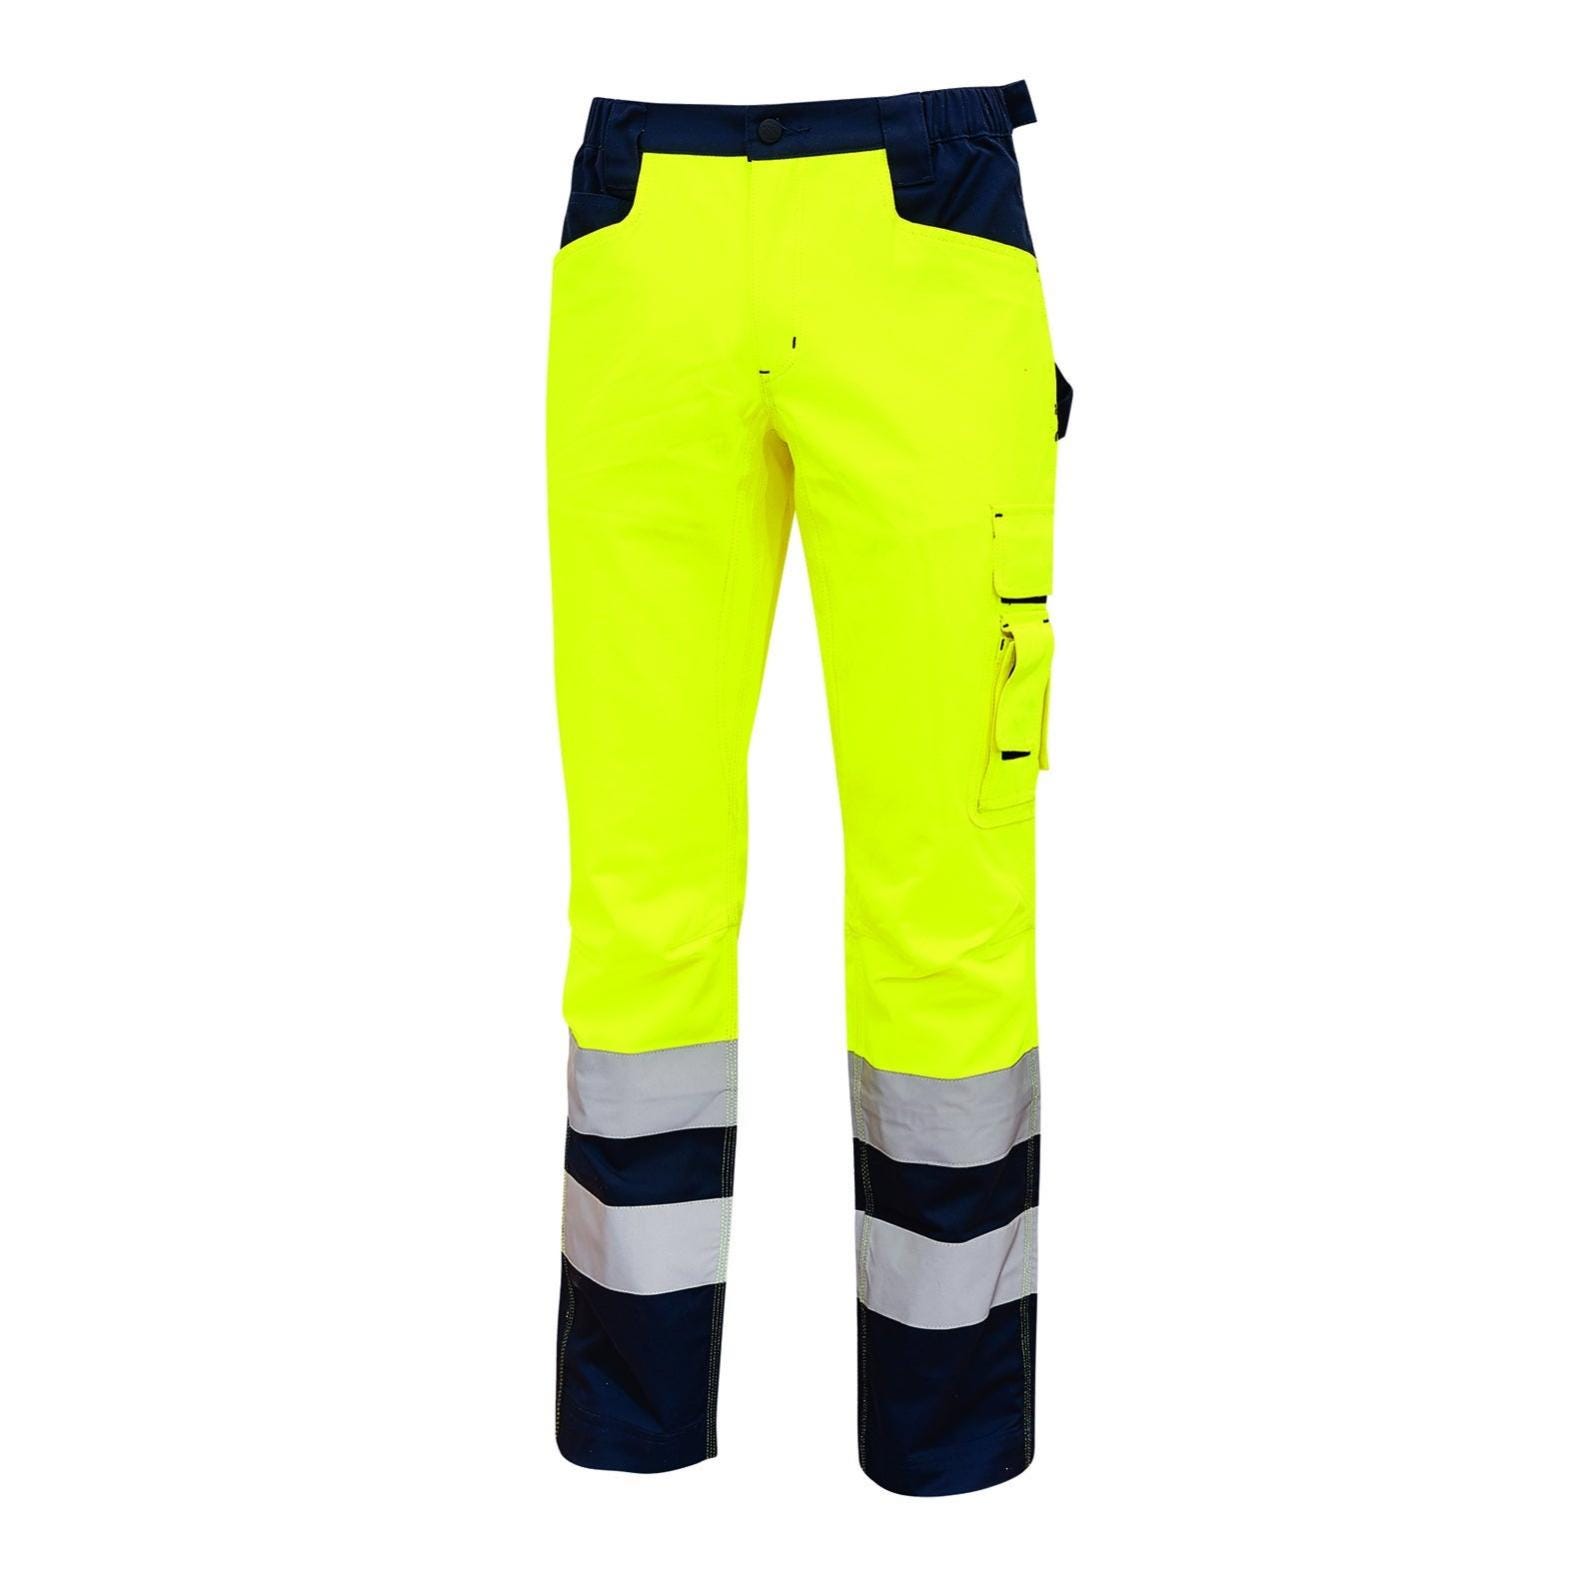 Pantalone da lavoro U-POWER Light giallo fluo tg. M